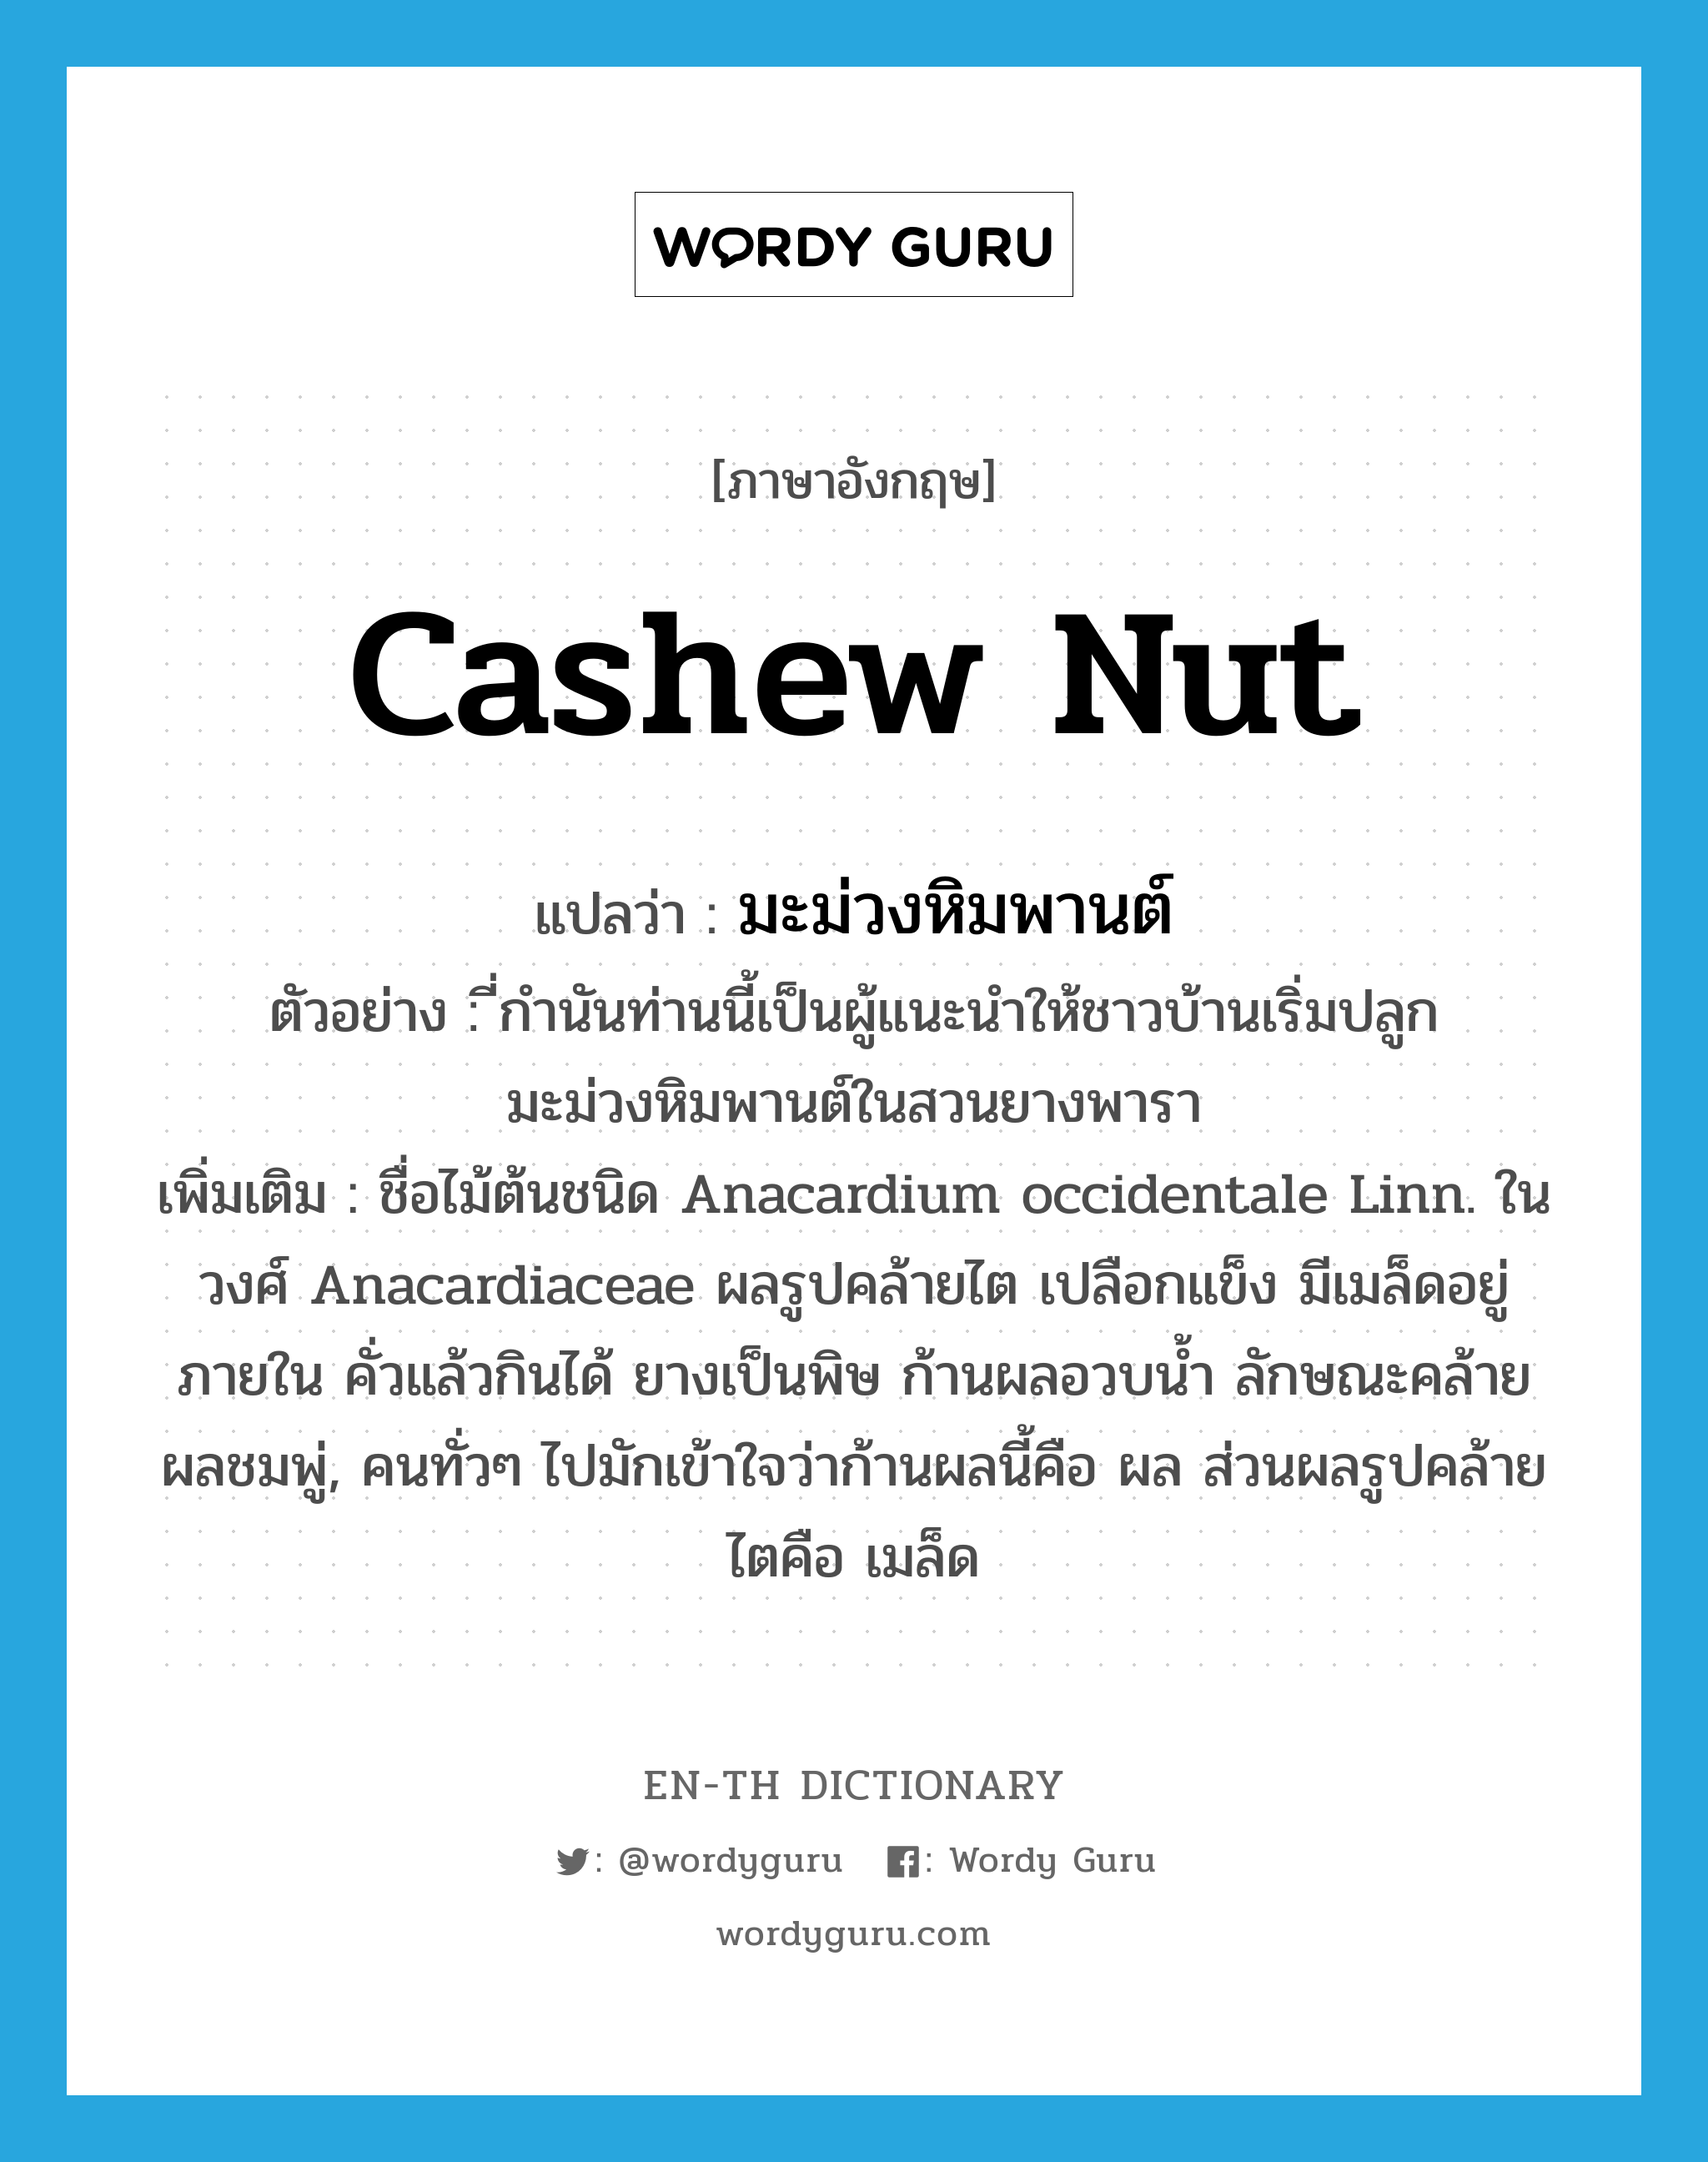 มะม่วงหิมพานต์ ภาษาอังกฤษ?, คำศัพท์ภาษาอังกฤษ มะม่วงหิมพานต์ แปลว่า cashew nut ประเภท N ตัวอย่าง ี่กำนันท่านนี้เป็นผู้แนะนำให้ชาวบ้านเริ่มปลูกมะม่วงหิมพานต์ในสวนยางพารา เพิ่มเติม ชื่อไม้ต้นชนิด Anacardium occidentale Linn. ในวงศ์ Anacardiaceae ผลรูปคล้ายไต เปลือกแข็ง มีเมล็ดอยู่ภายใน คั่วแล้วกินได้ ยางเป็นพิษ ก้านผลอวบน้ำ ลักษณะคล้ายผลชมพู่, คนทั่วๆ ไปมักเข้าใจว่าก้านผลนี้คือ ผล ส่วนผลรูปคล้ายไตคือ เมล็ด หมวด N